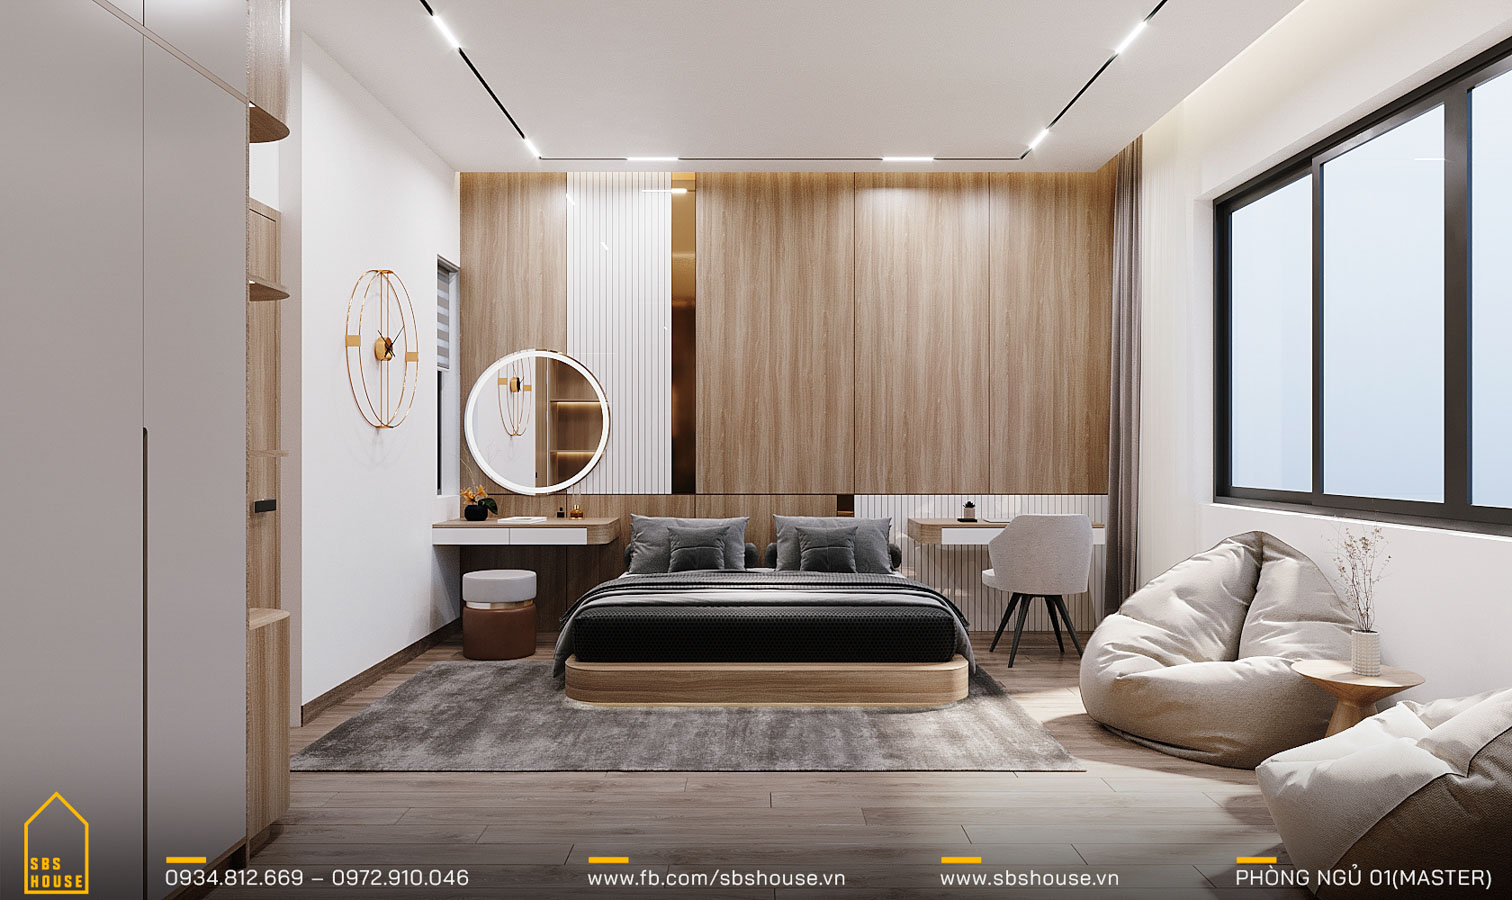 Không gian phòng ngủ đây thư giãn trong sự phối hợp linh hoạt giữa chất liệu gỗ và vật liệu nội thất hiện đại